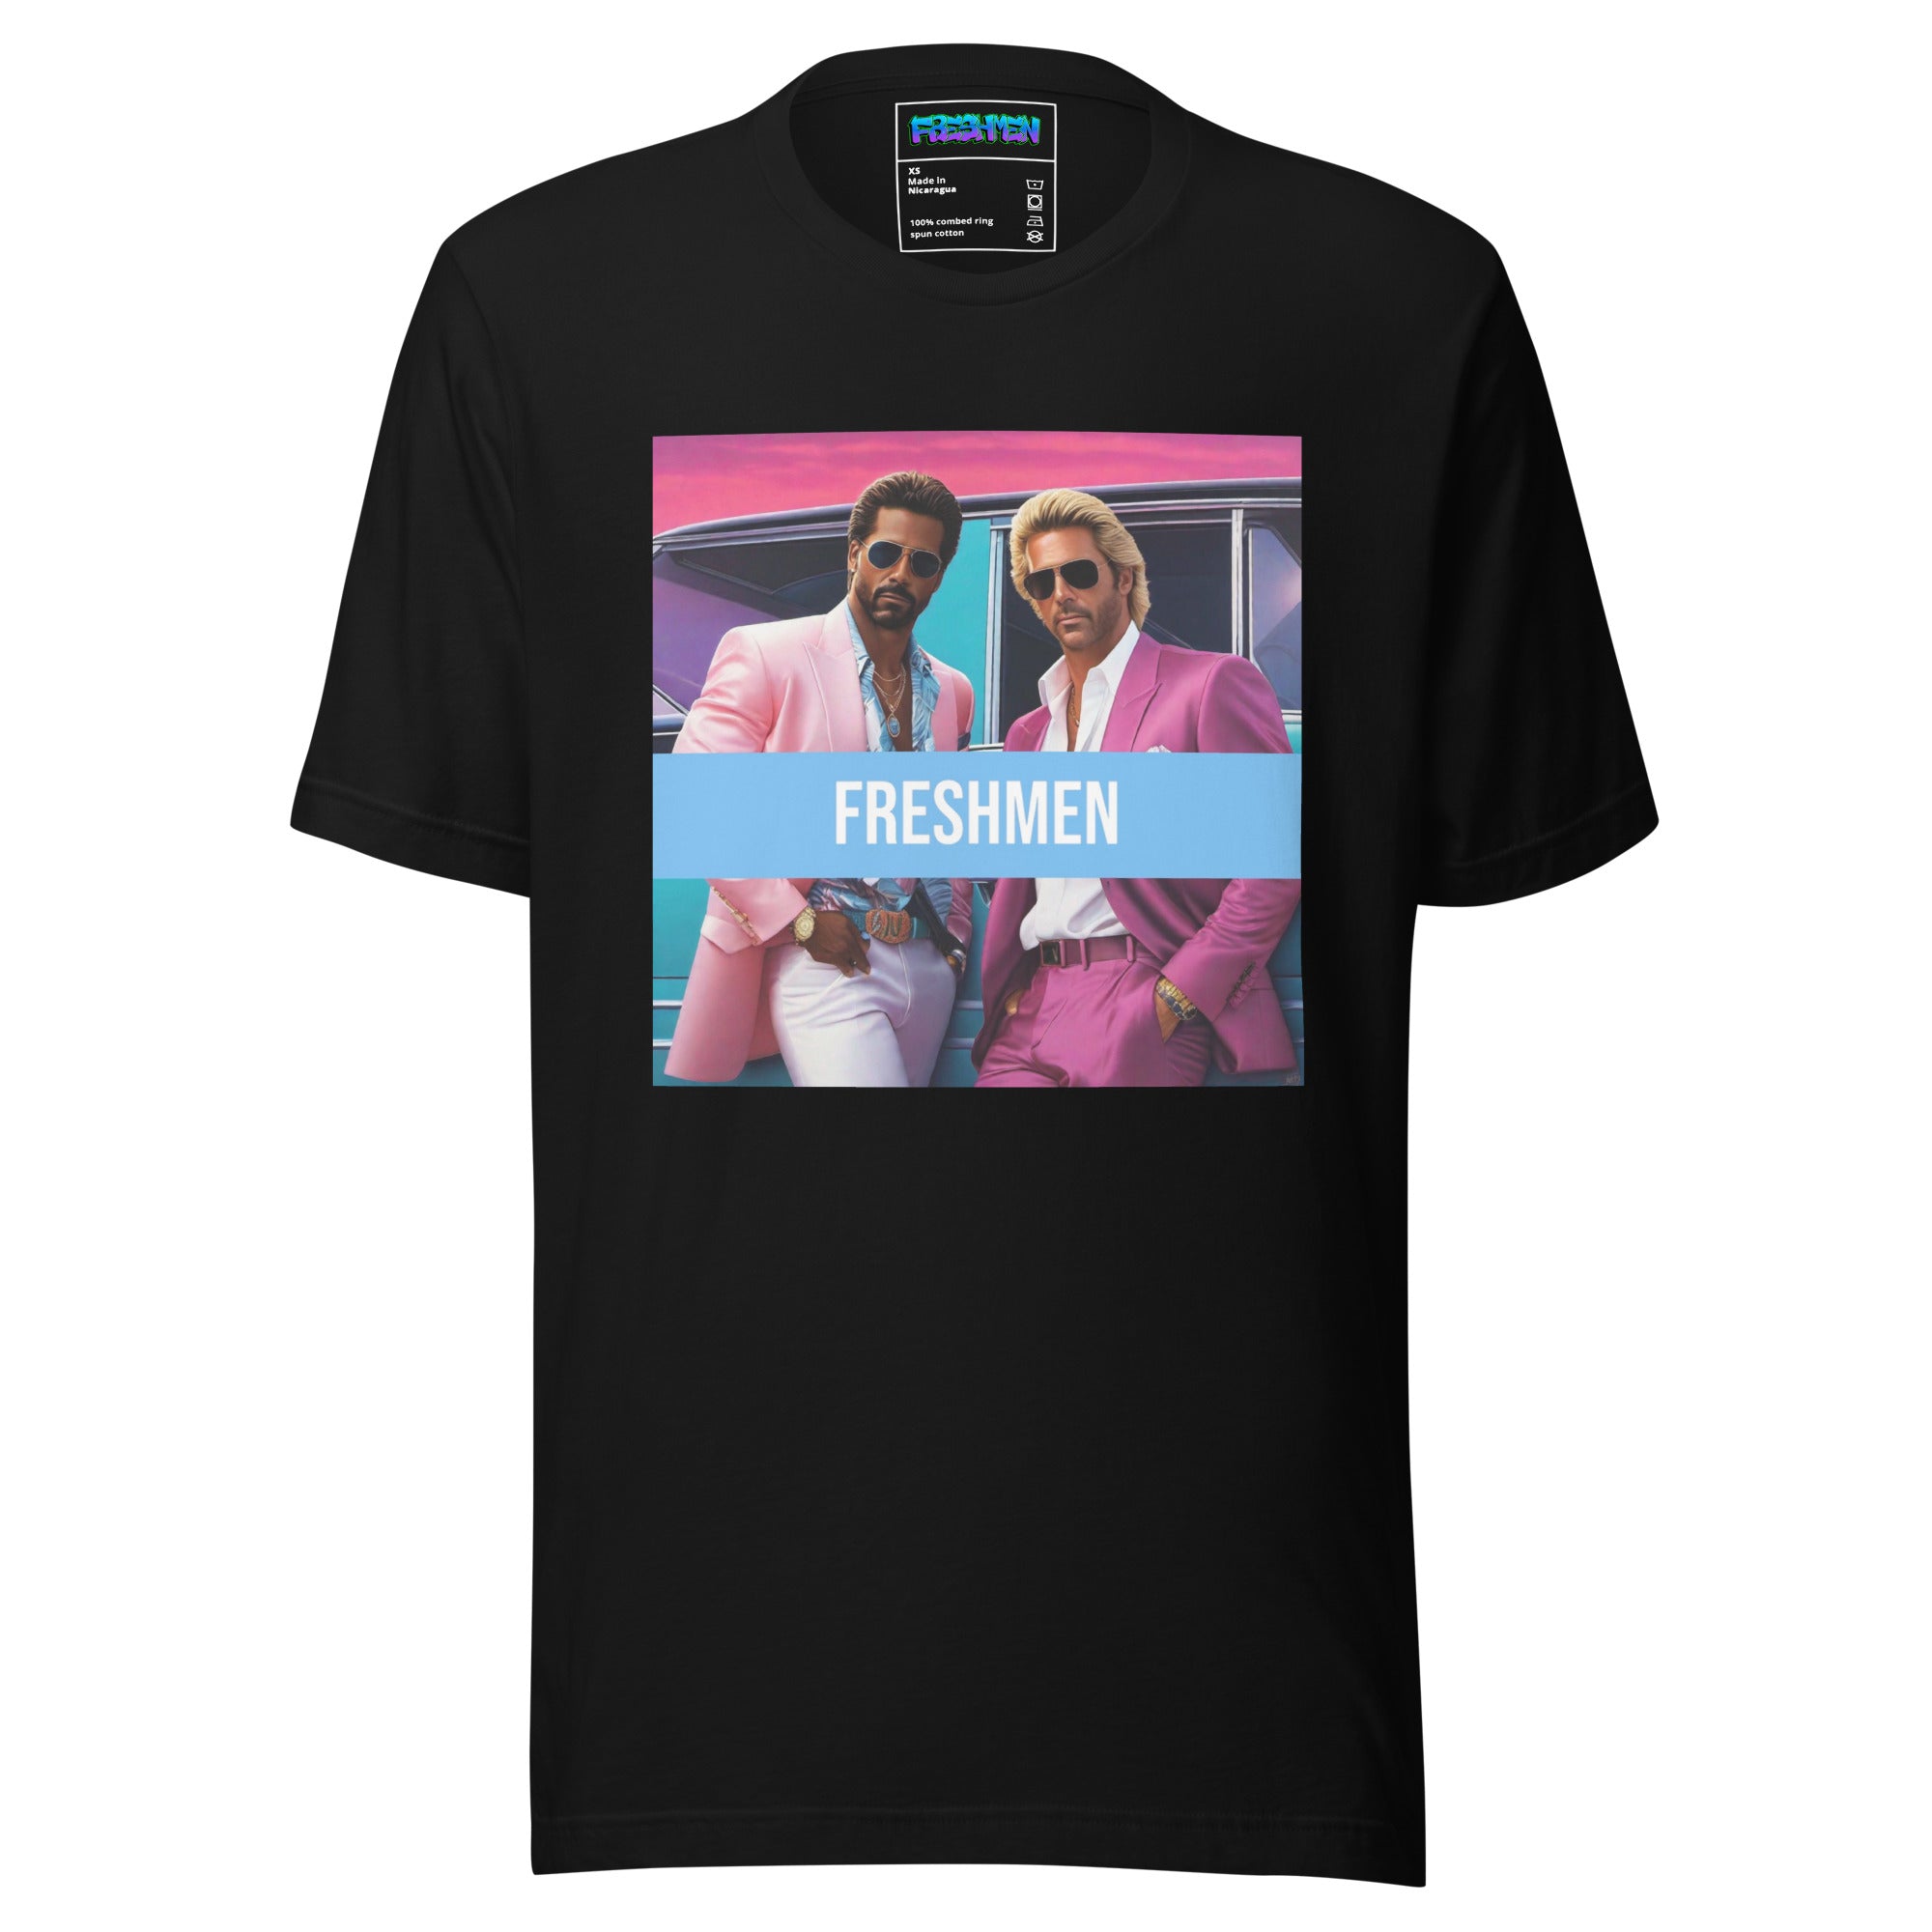 Freshmen Miami Style Unisex Graphic T-Shirt